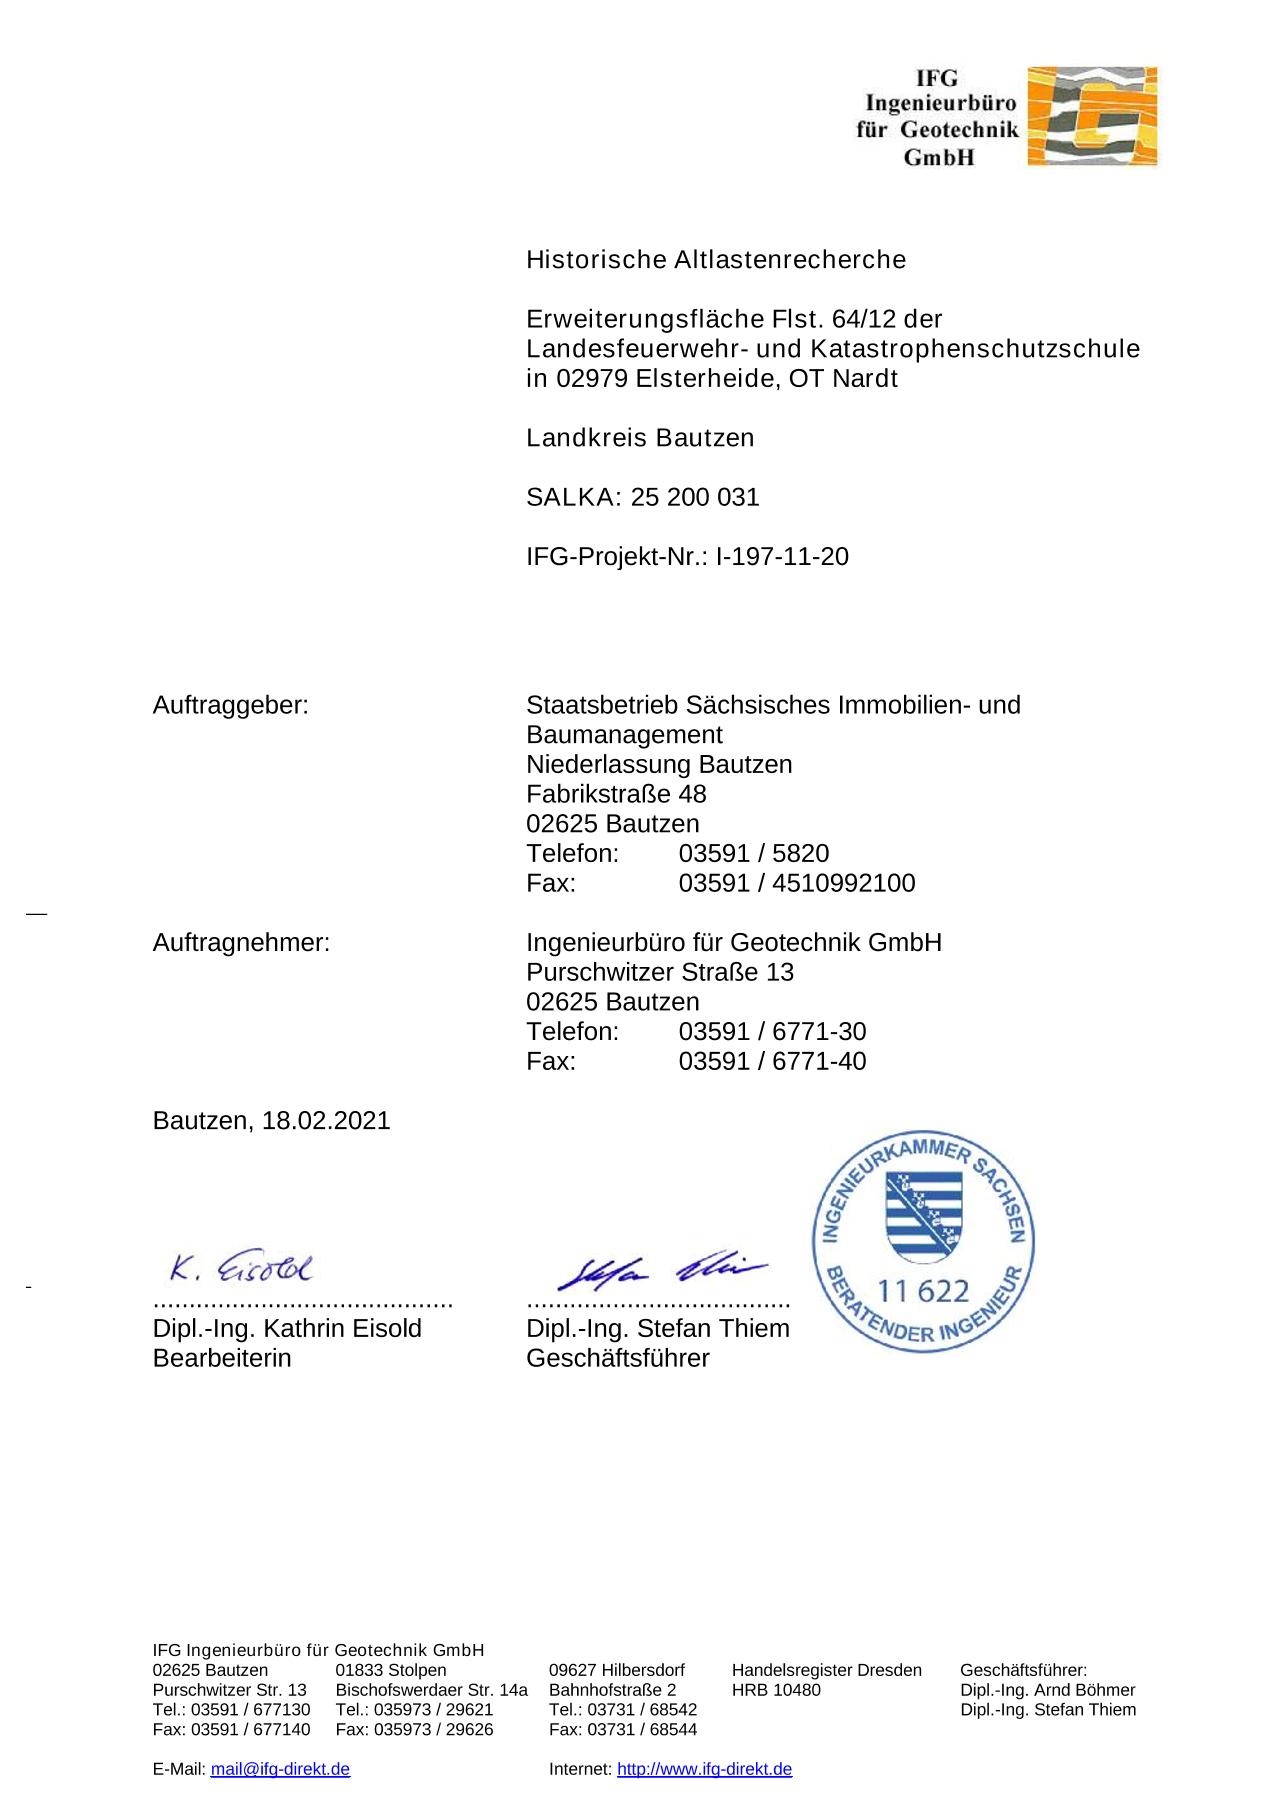 Vorschau Dokument: Altlastenrecherche - download Dokument